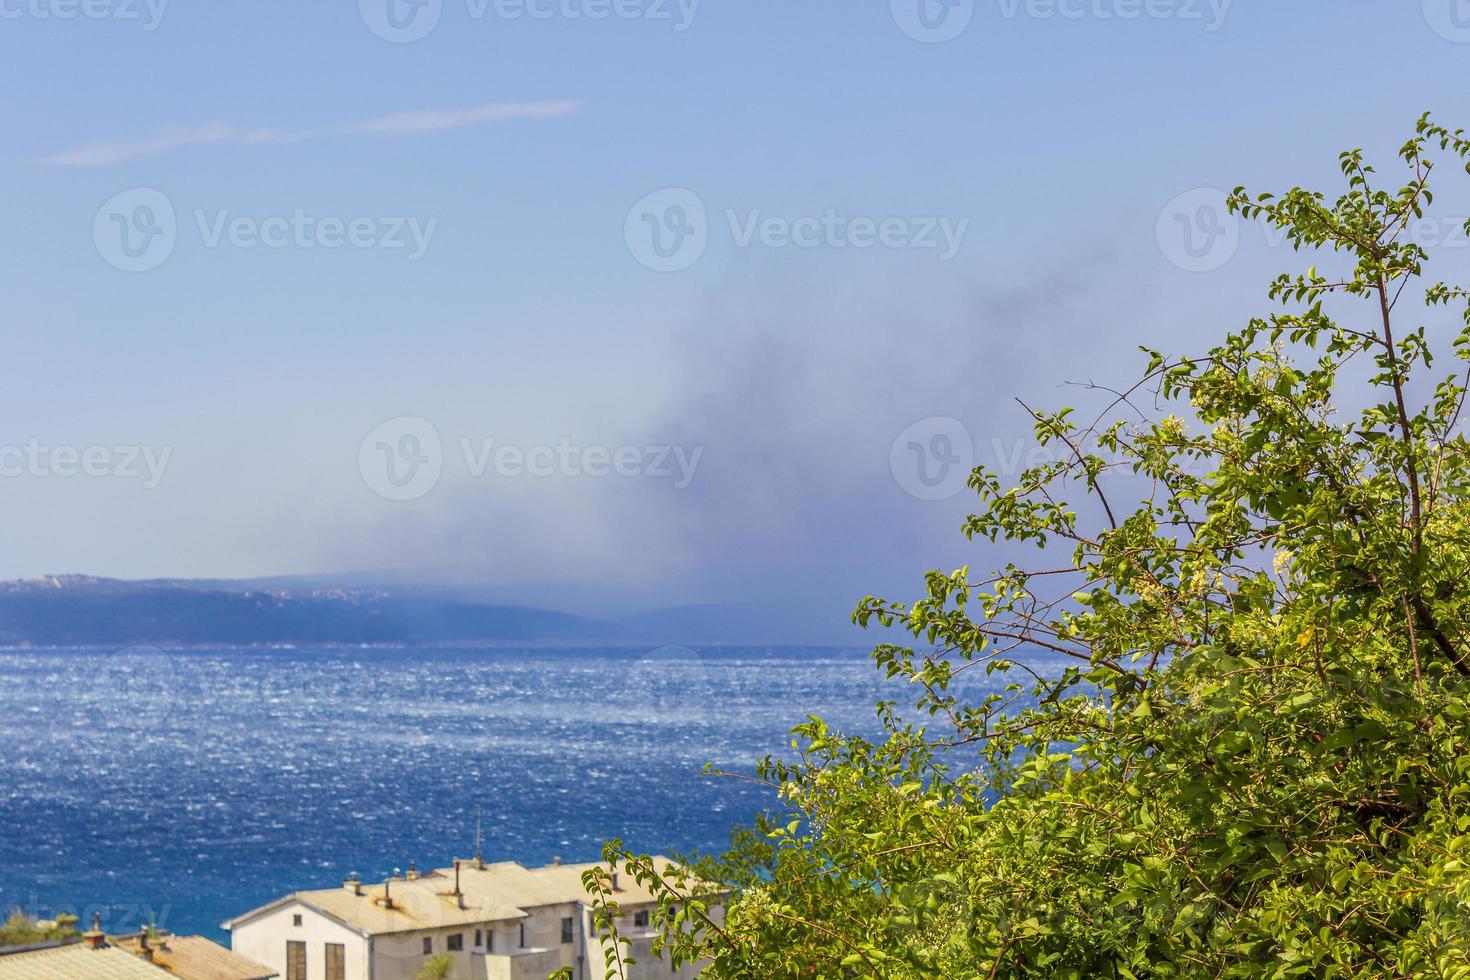 novi vinodolski in kroatië op een zonnige dag met rook van de bosbrand aan de horizon foto